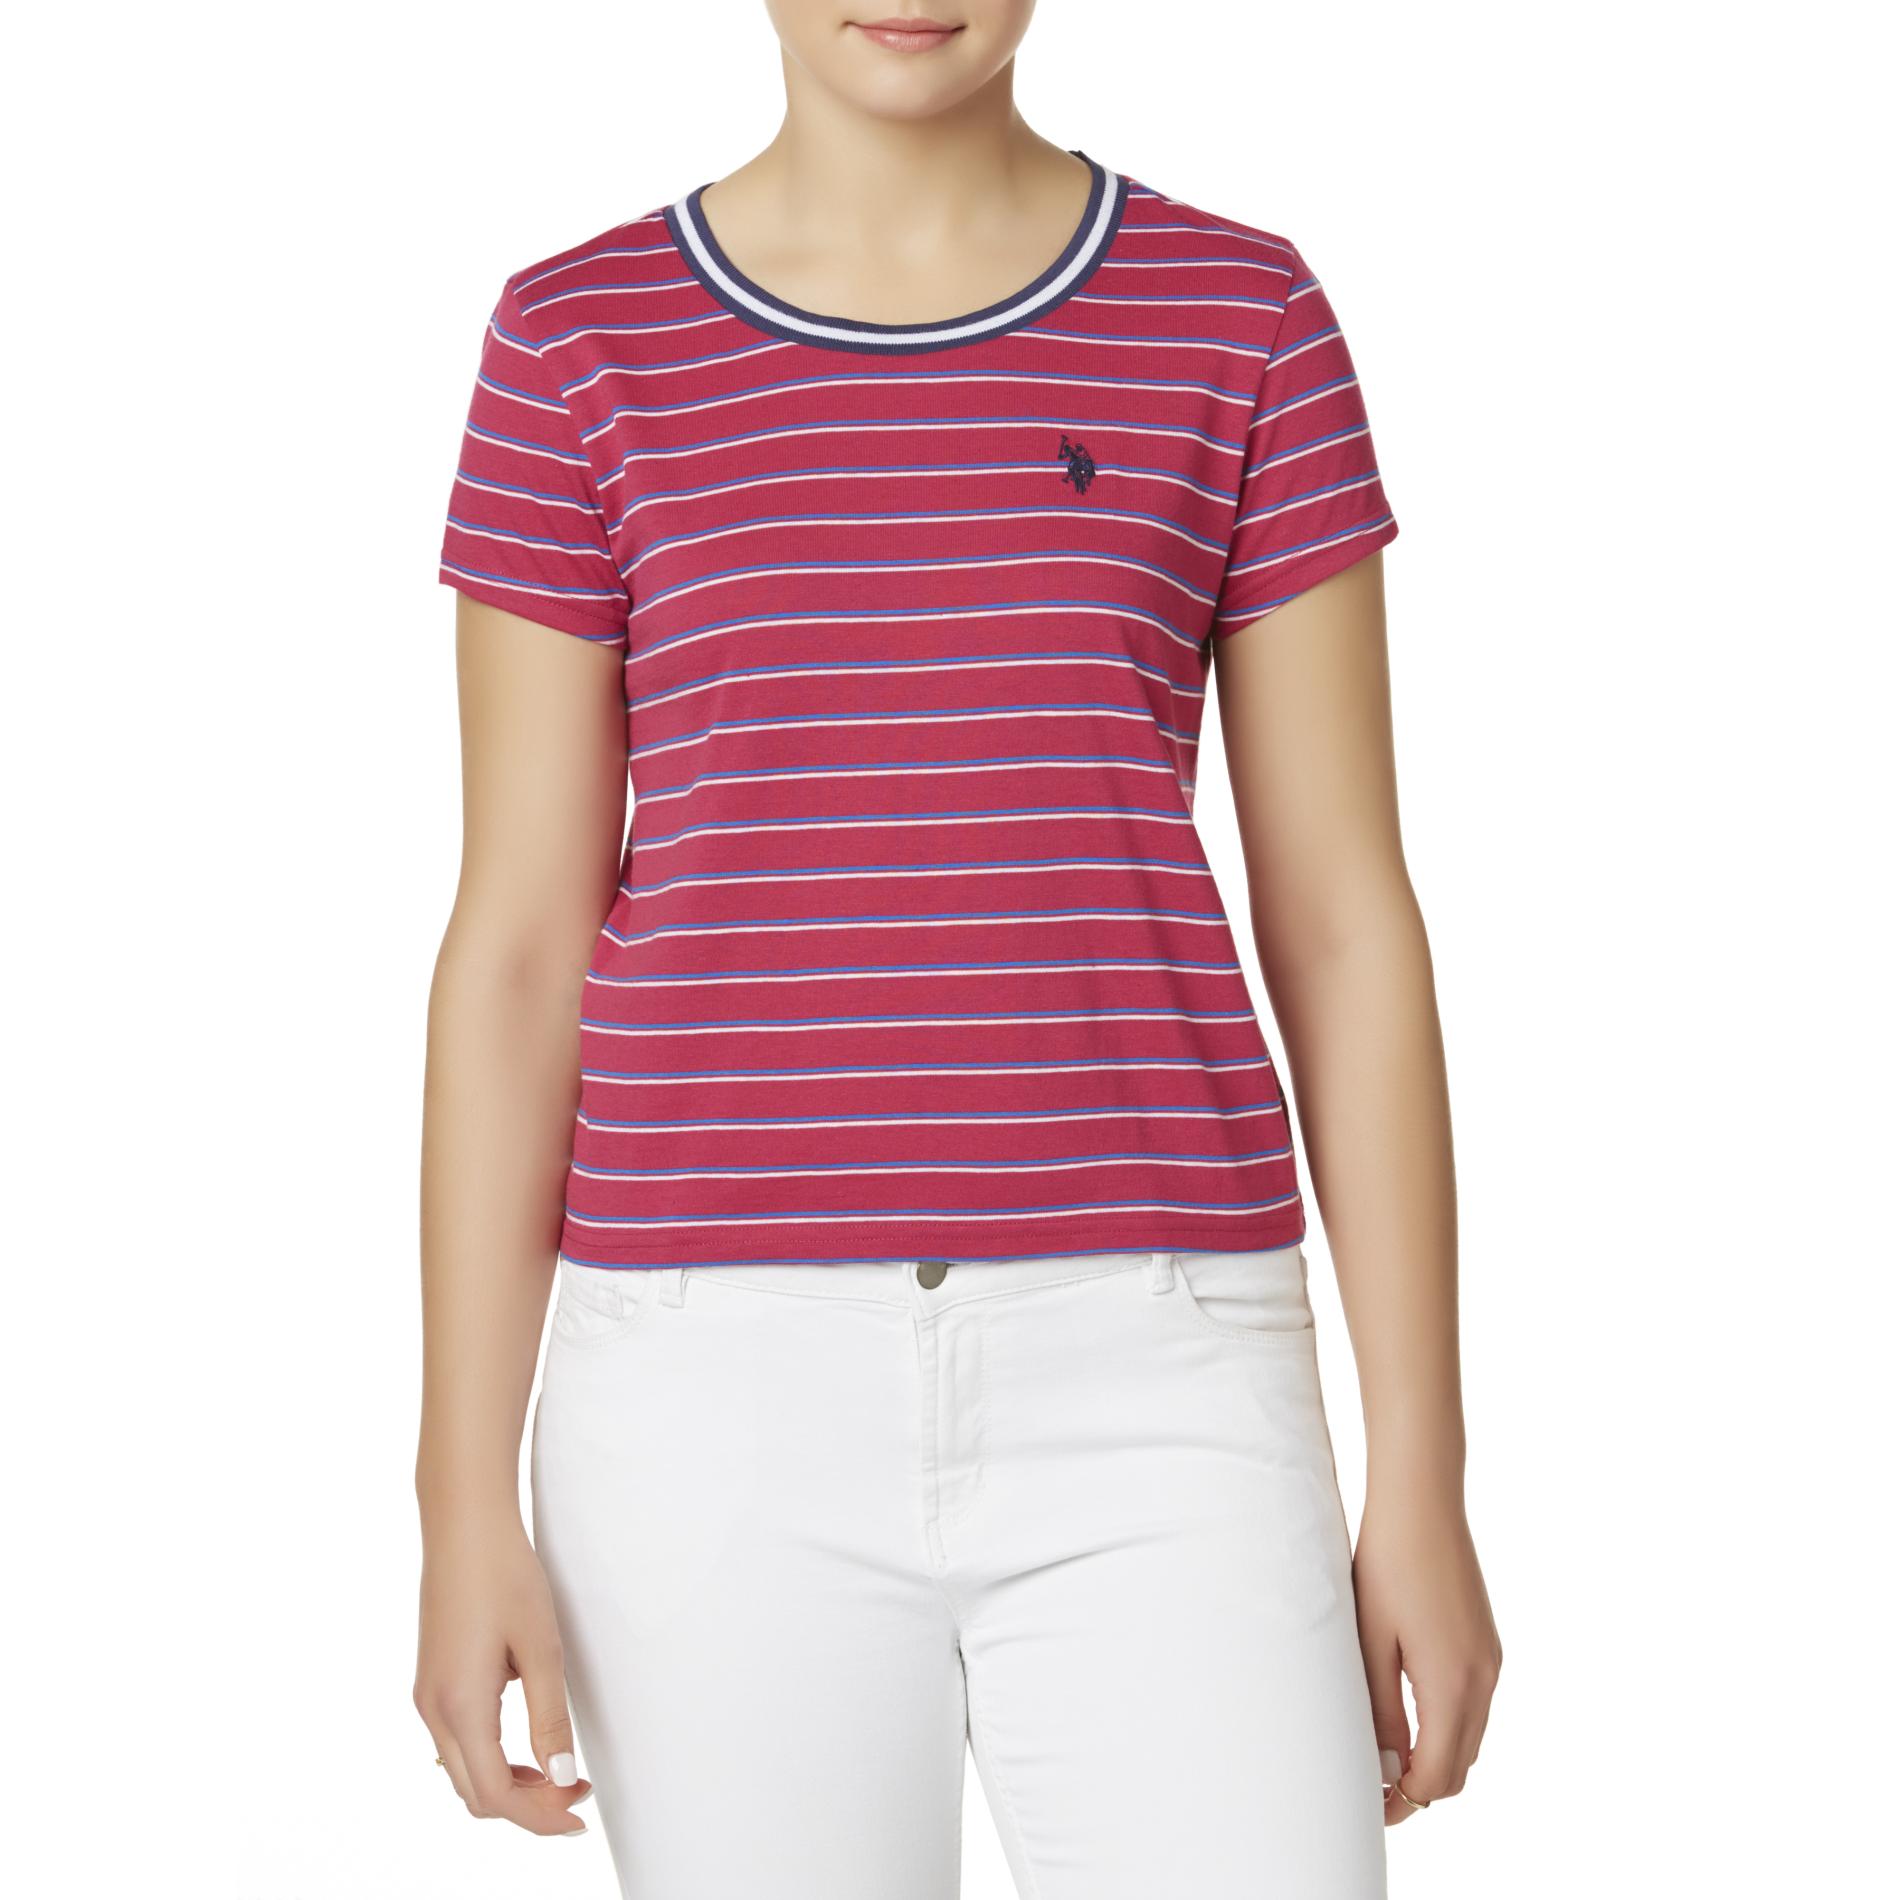 U.S. Polo Assn. Juniors' T-Shirt - Striped